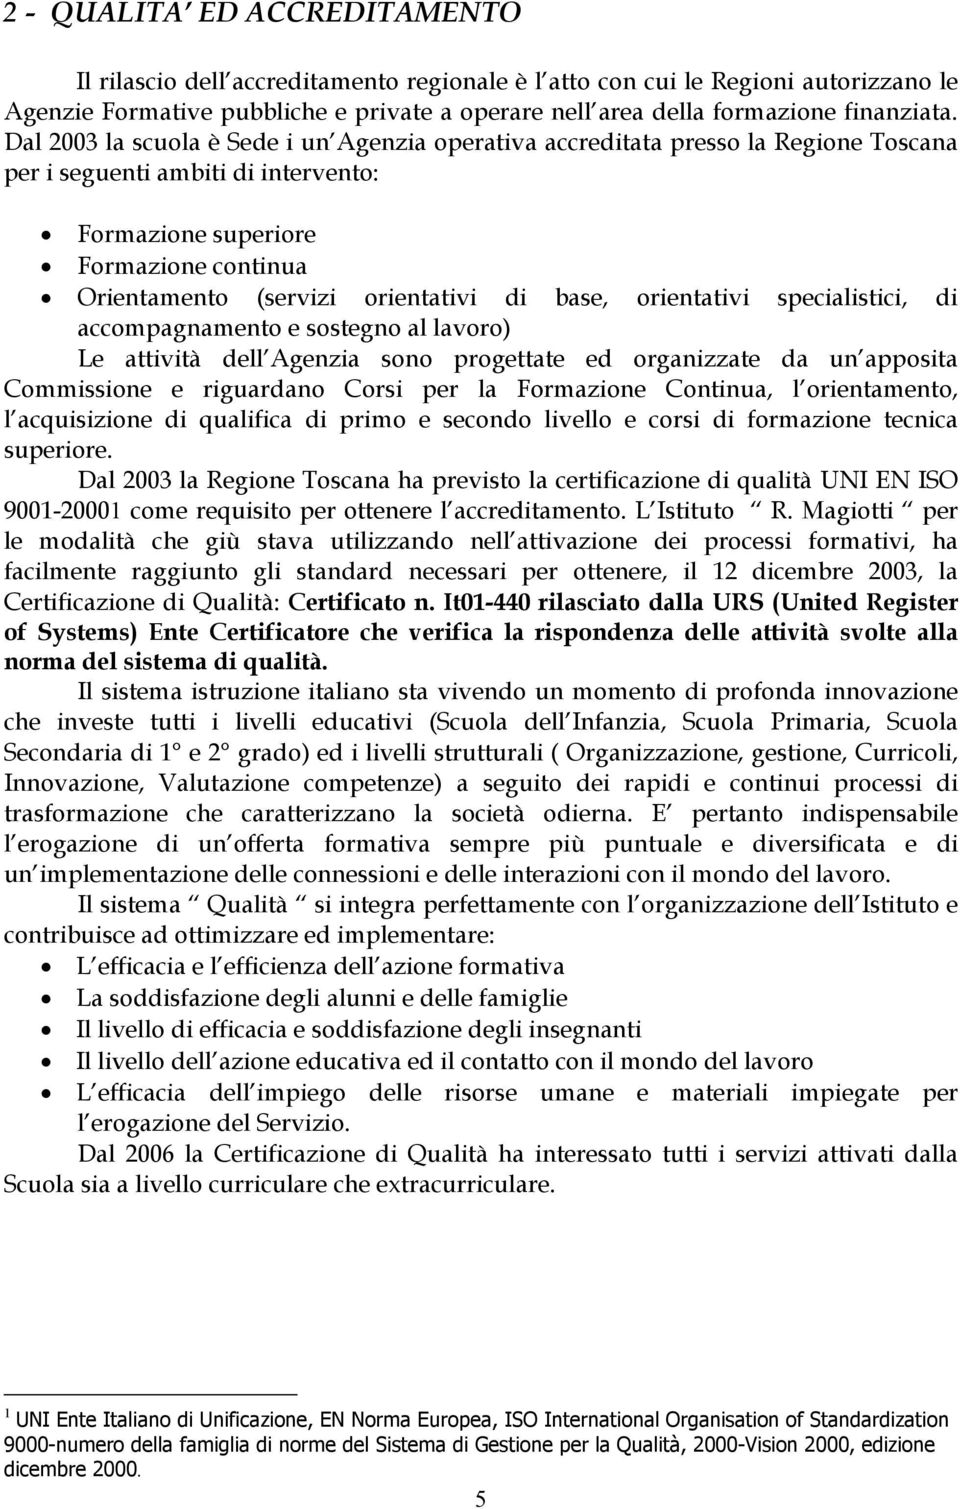 Dal 2003 la scuola è Sede i un Agenzia operativa accreditata presso la Regione Toscana per i seguenti ambiti di intervento: Formazione superiore Formazione continua Orientamento (servizi orientativi